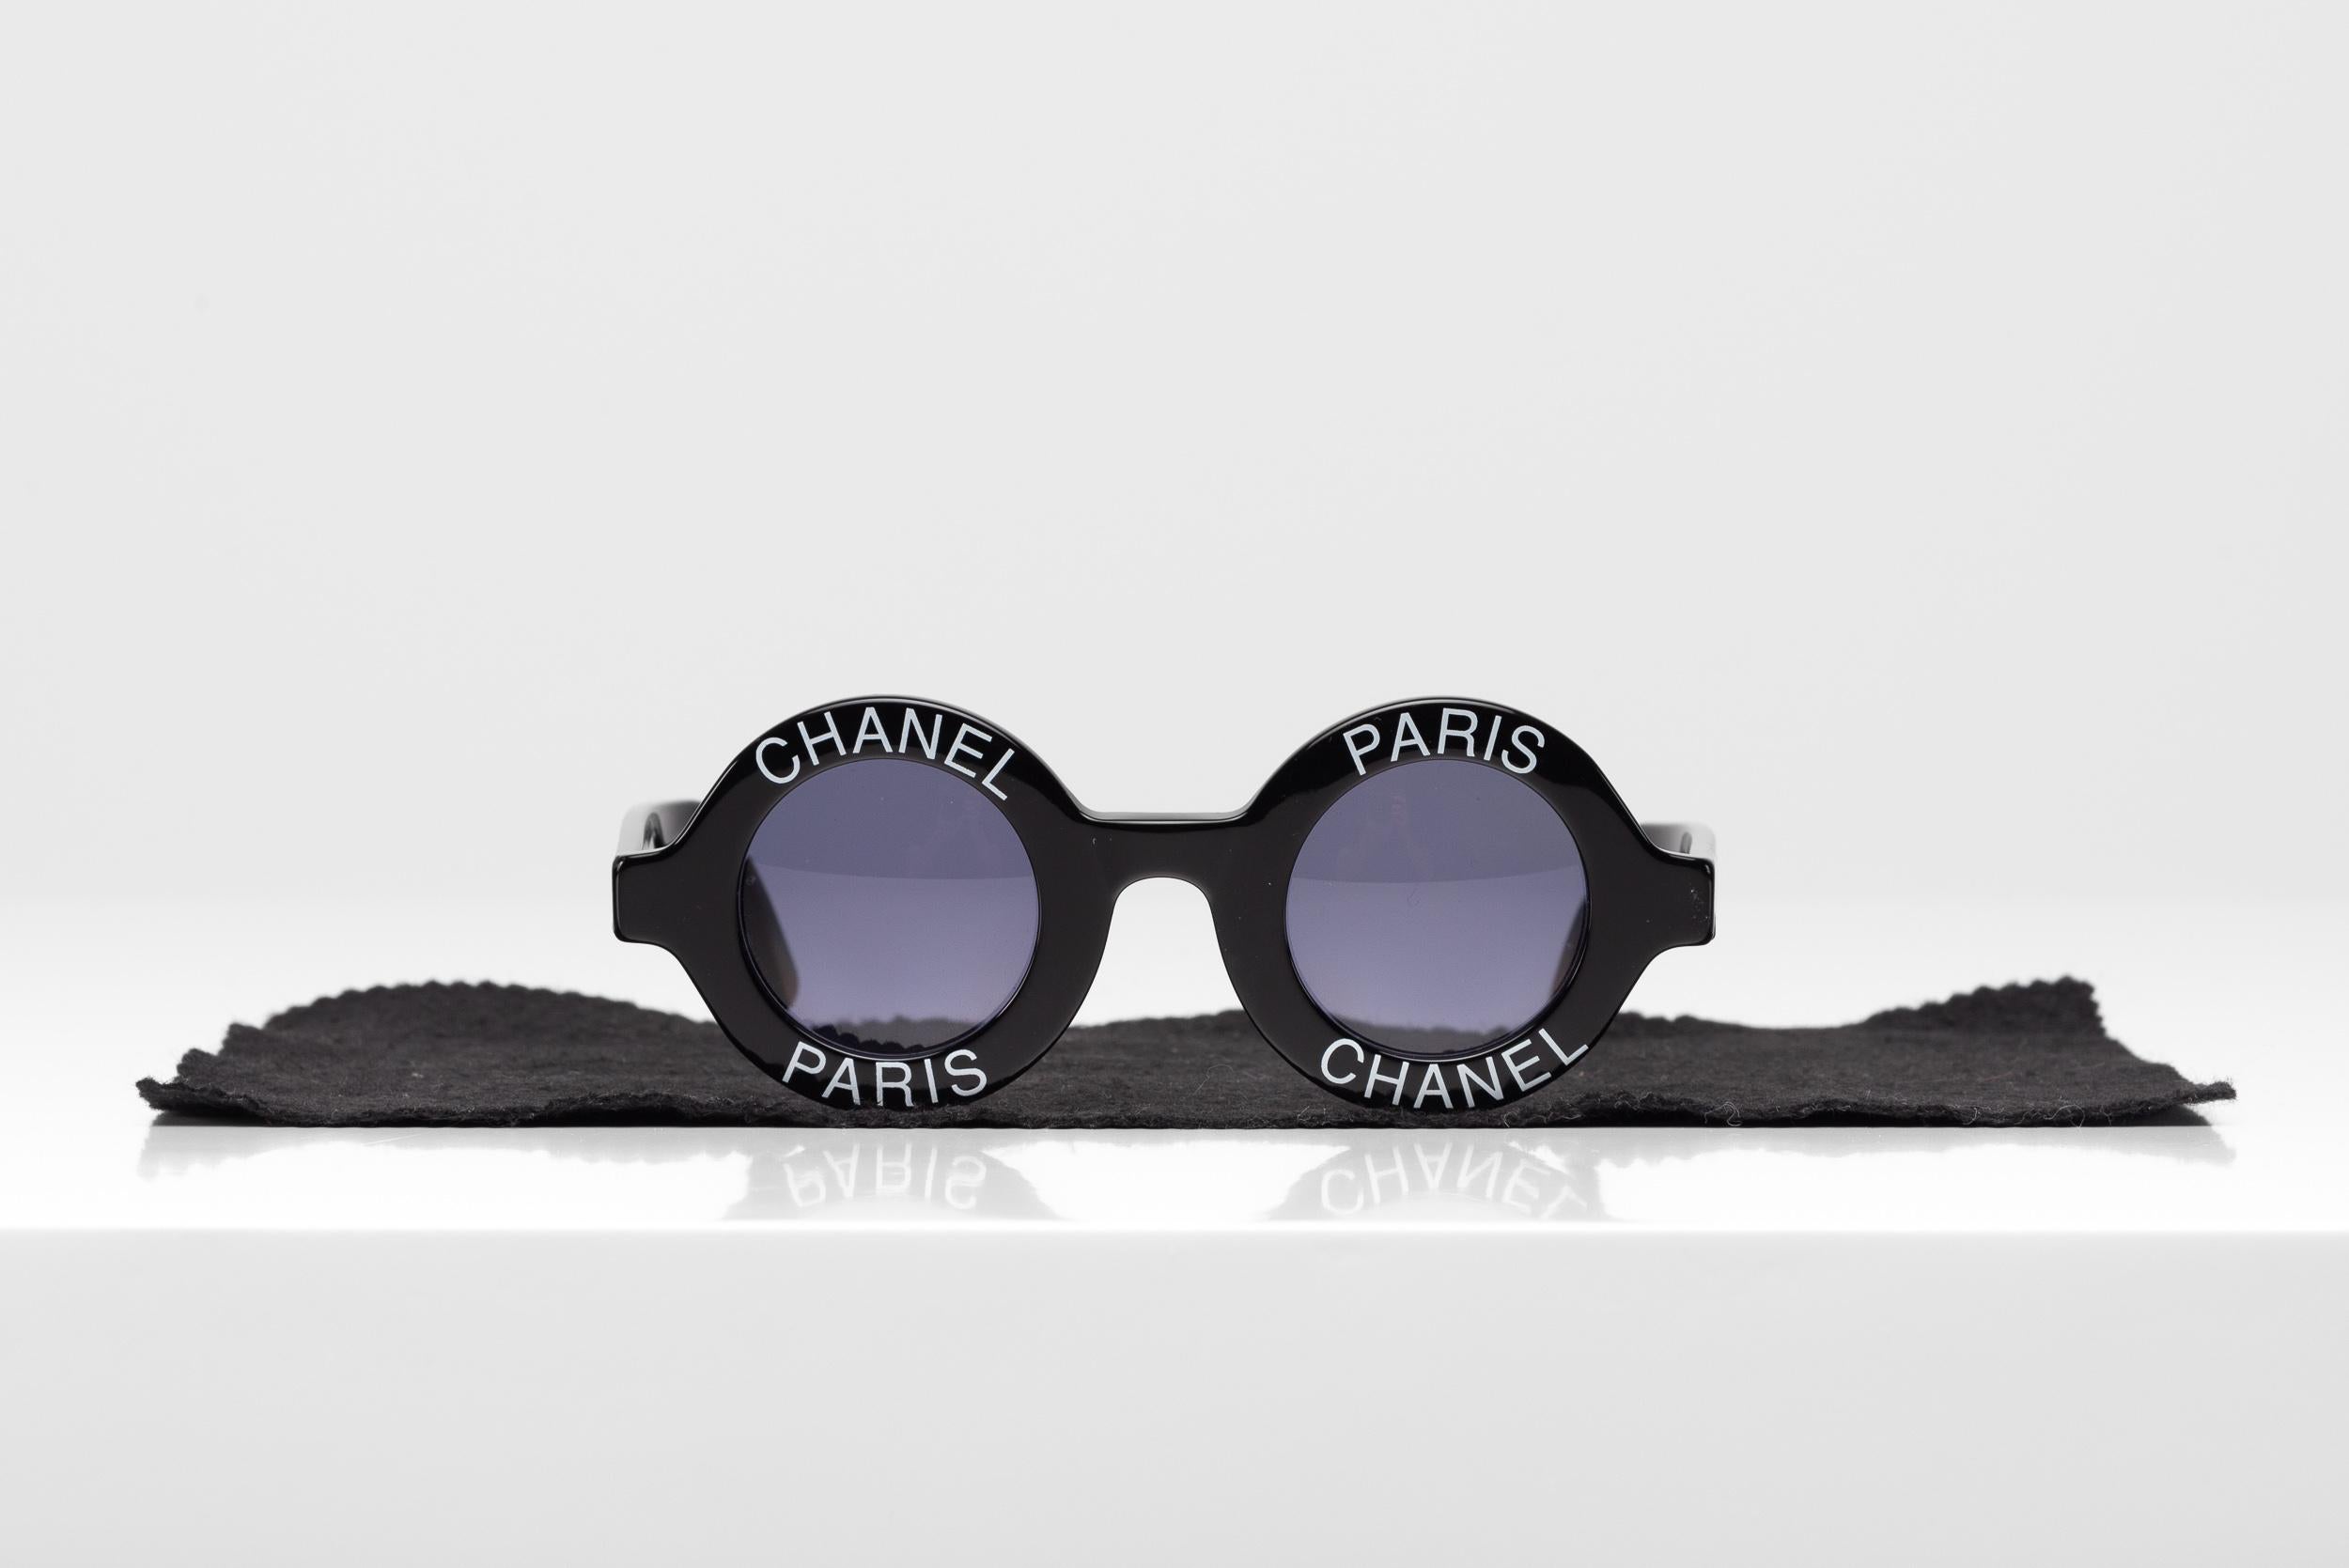 De la collection SAVINETI nous vous proposons ces lunettes de soleil Chanel Vintage :
- Marque : Chanel
- Modèle : Lunettes de soleil à logo rond
- Année : années 90
- Condit : Bon

Véritables déclarations de mode, les lunettes de Chanel oscillent